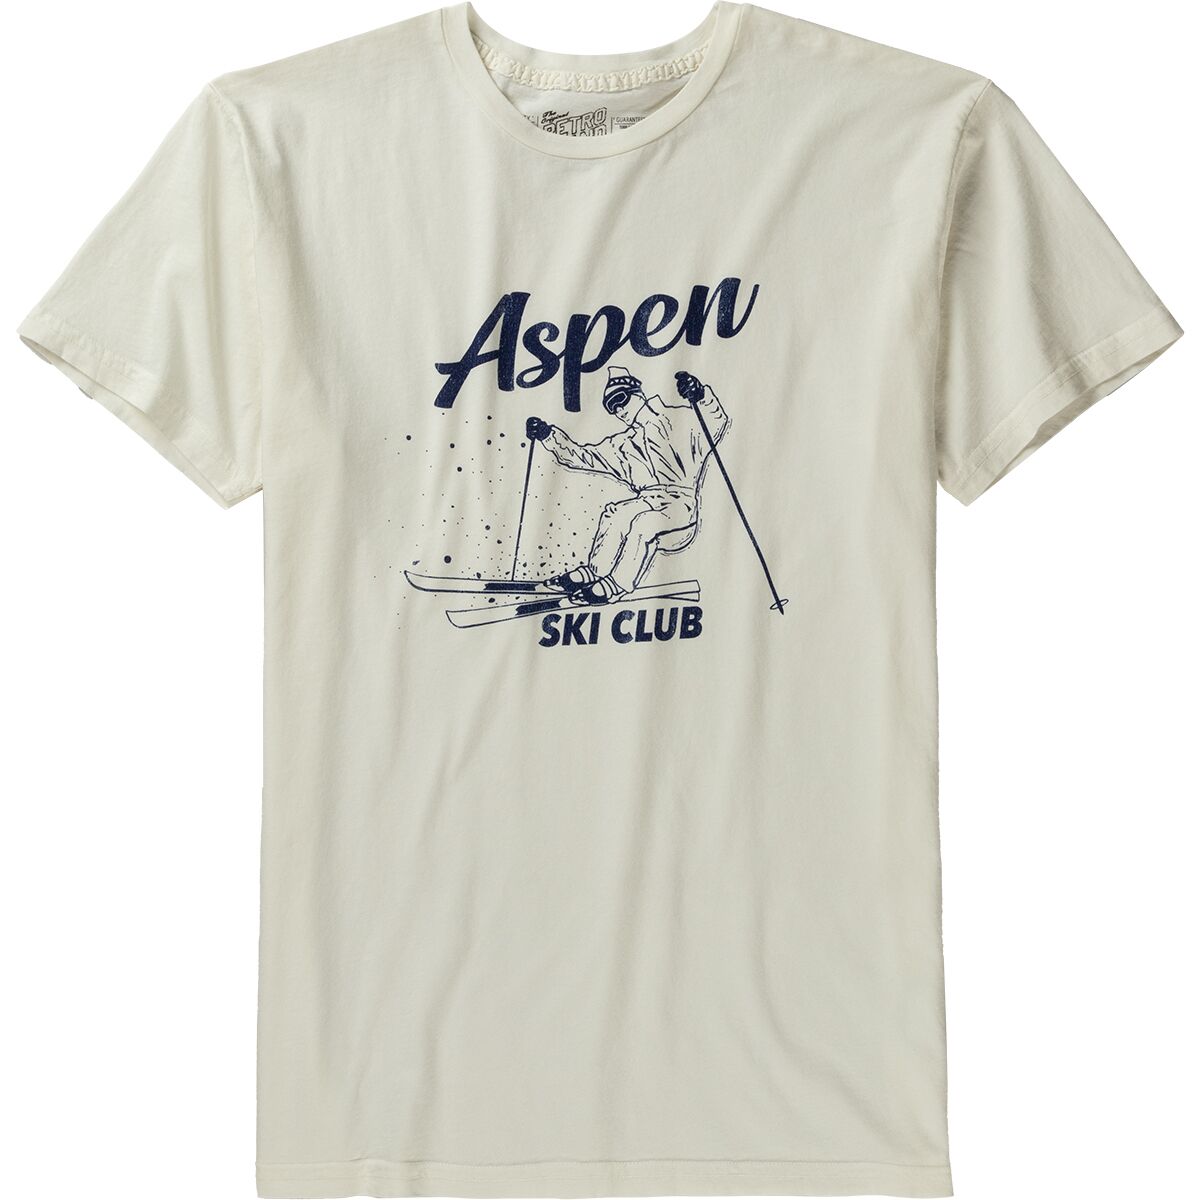 Original Retro Brand Aspen Ski Club T-Shirt